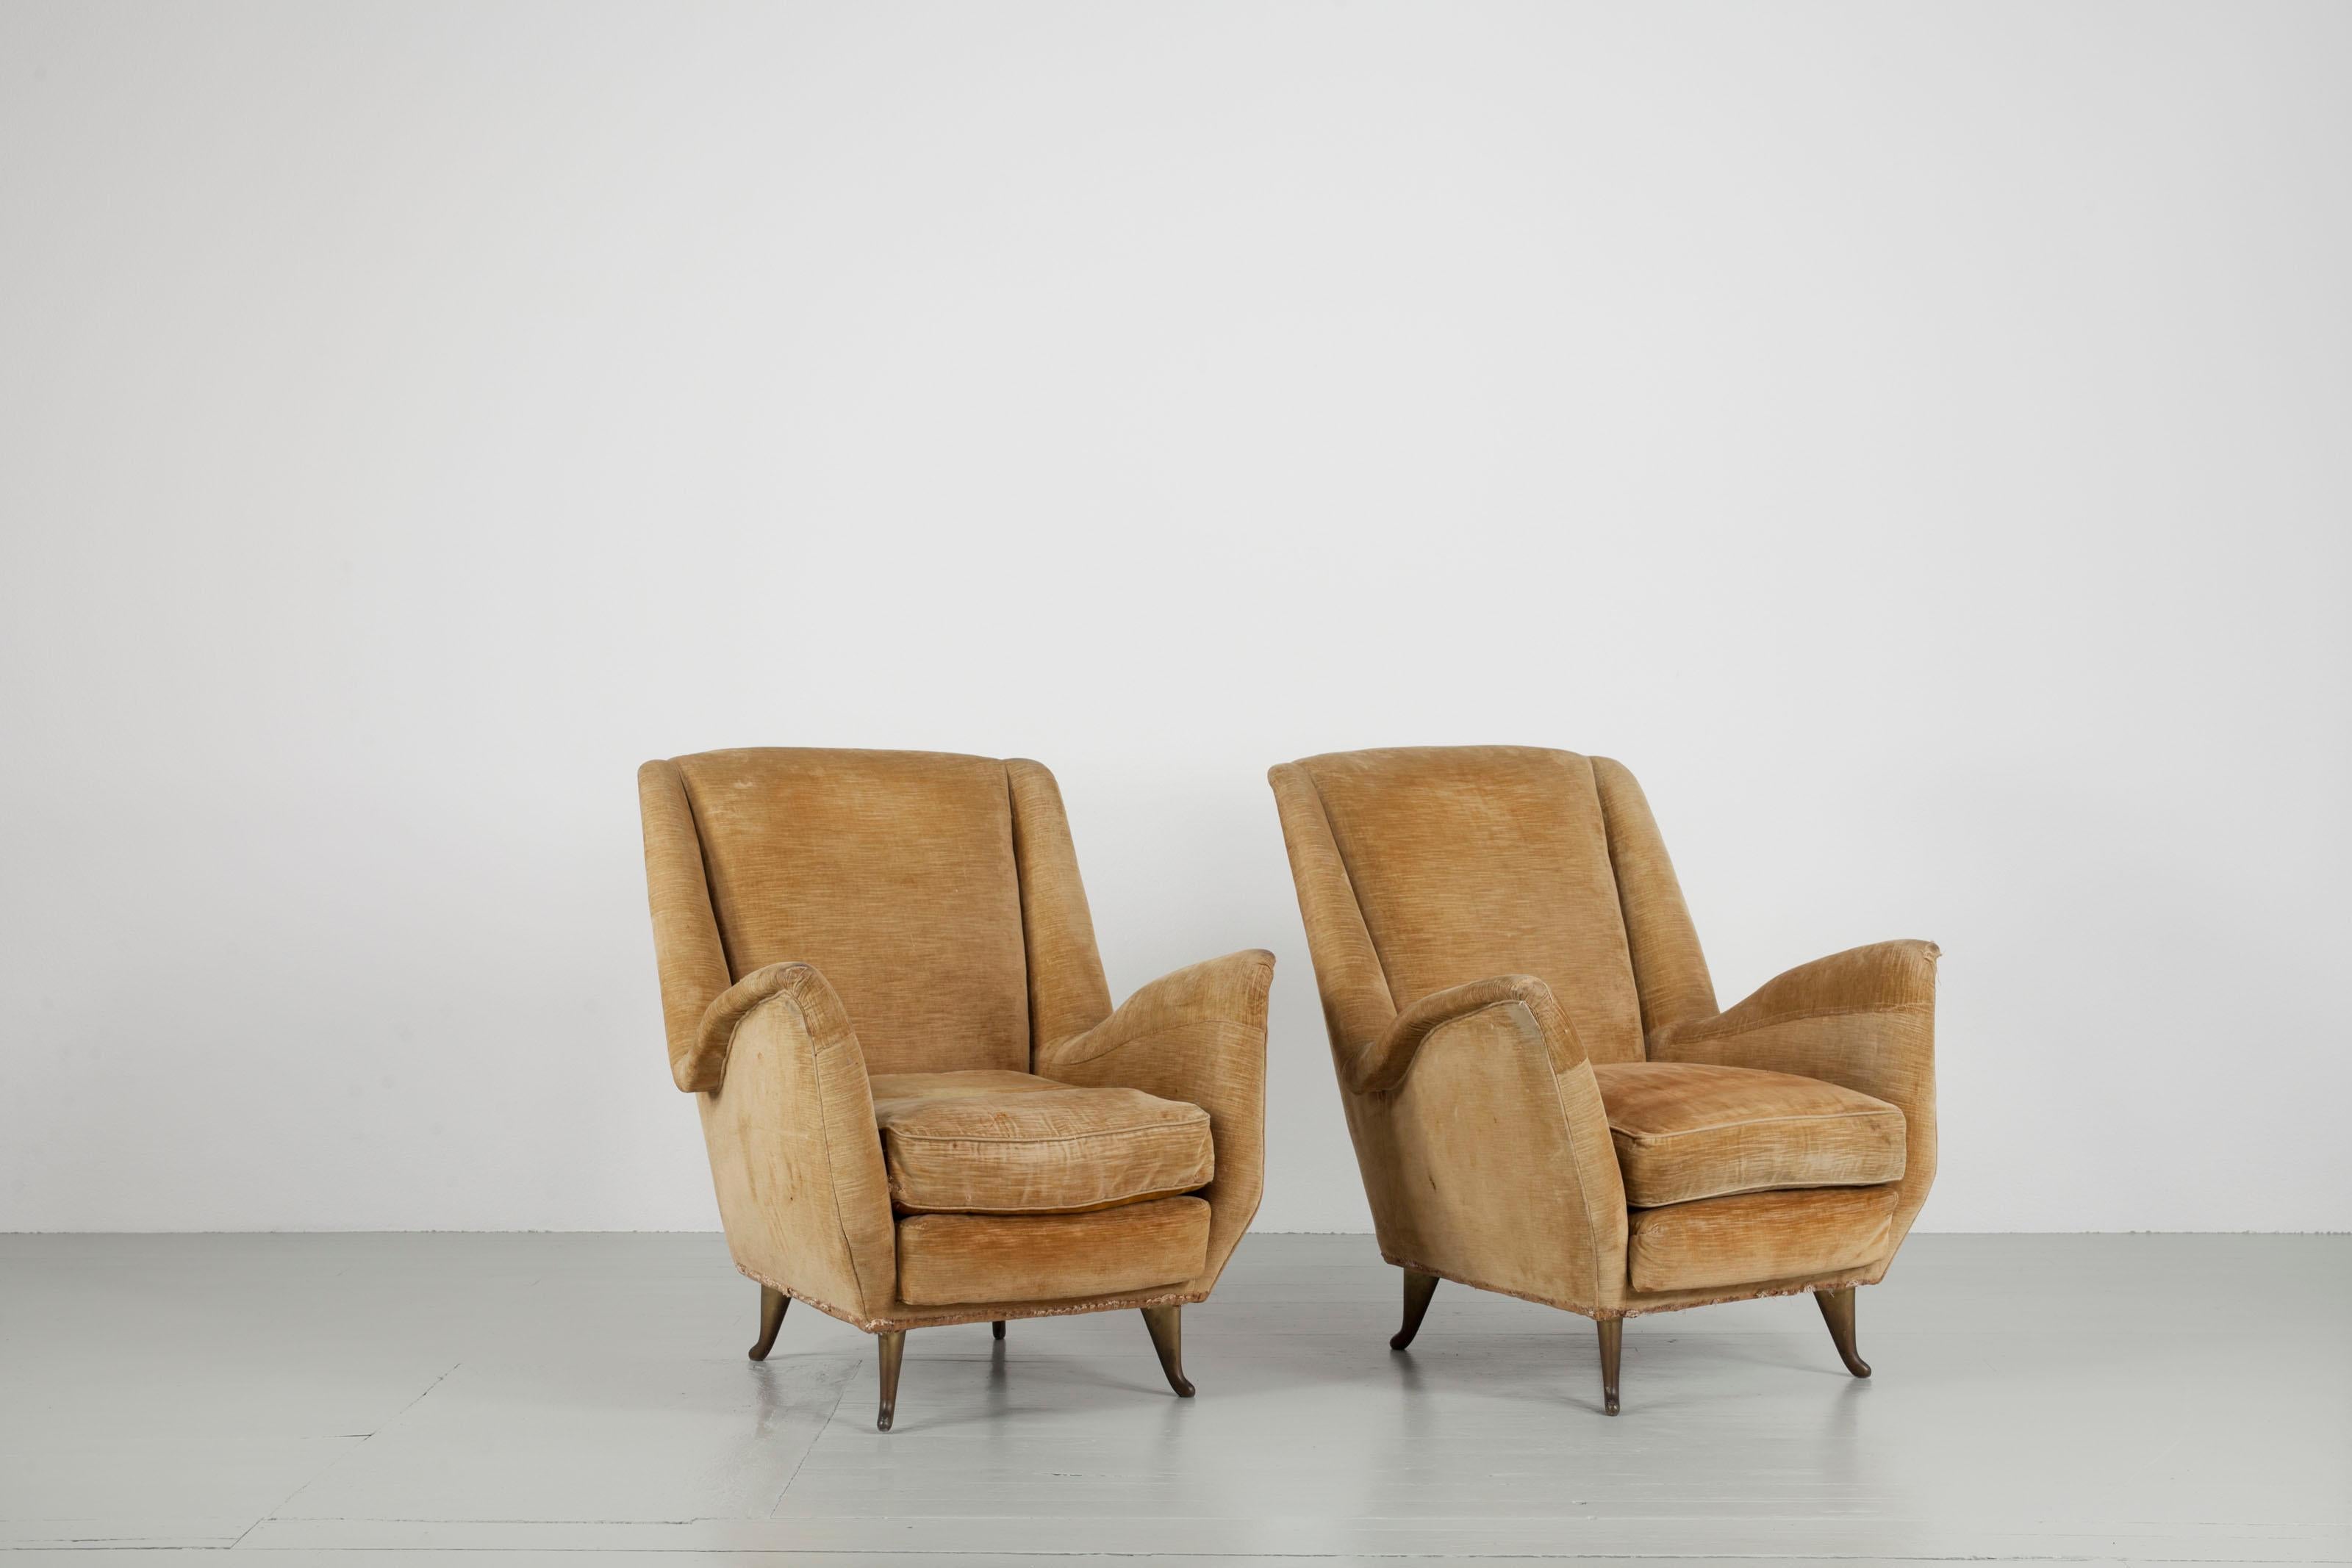 Ensemble de deux chaises à oreilles de couleur crème, design et fabricant I. S. A. Bergamo, Italie, années 1950. Les chaises sont dotées de pieds délicats exceptionnels. Les chaises ont besoin d'un nouveau revêtement.

N'hésitez pas à nous contacter